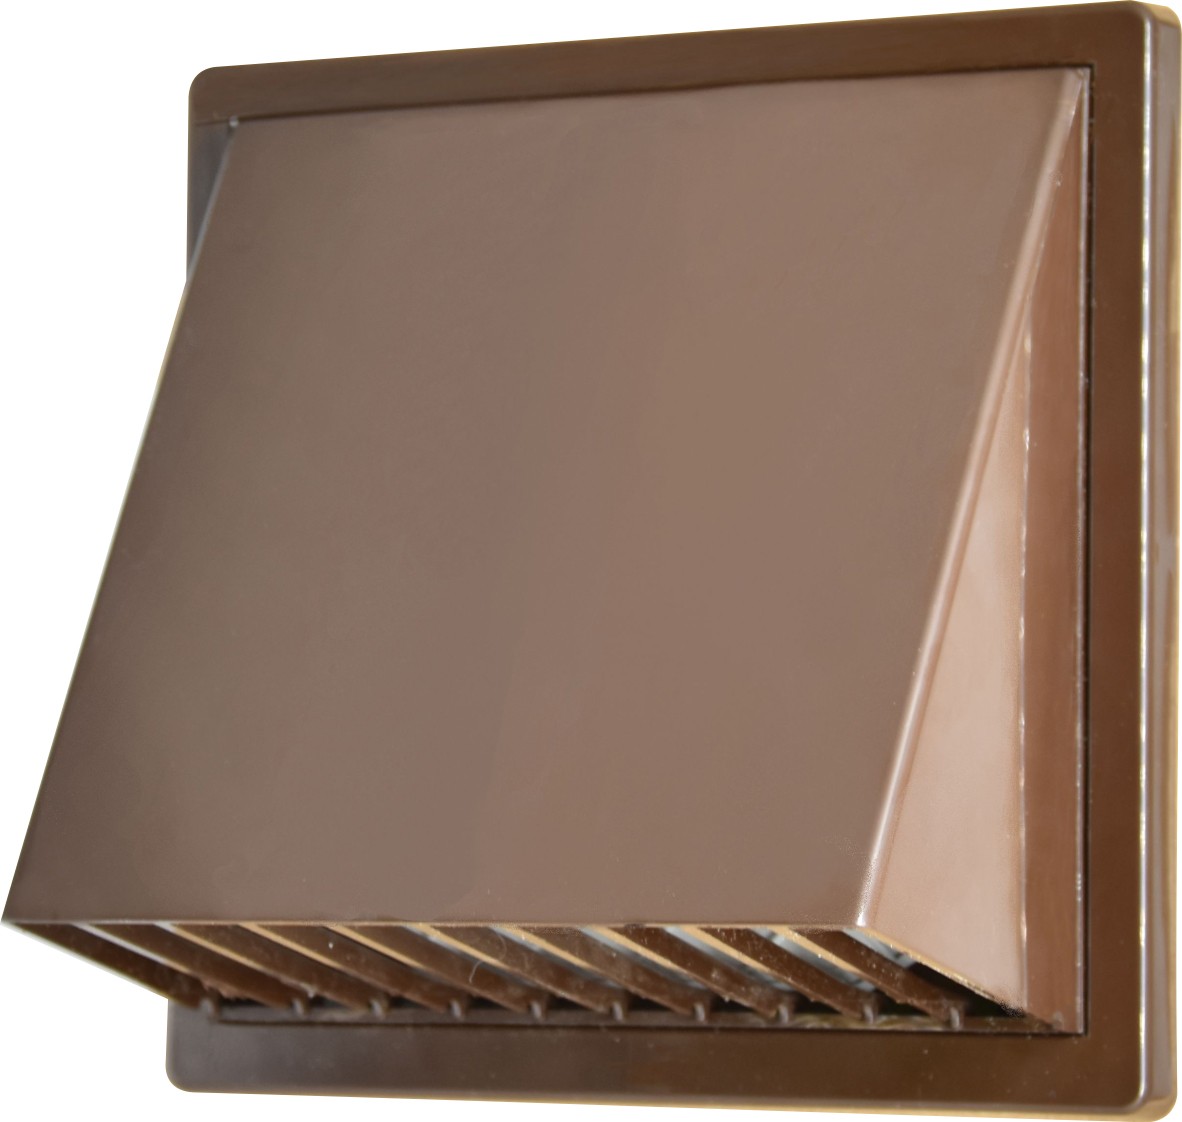 Купить колпак вентиляционный Airroxy 100 brown (02-501BR) в Днепре